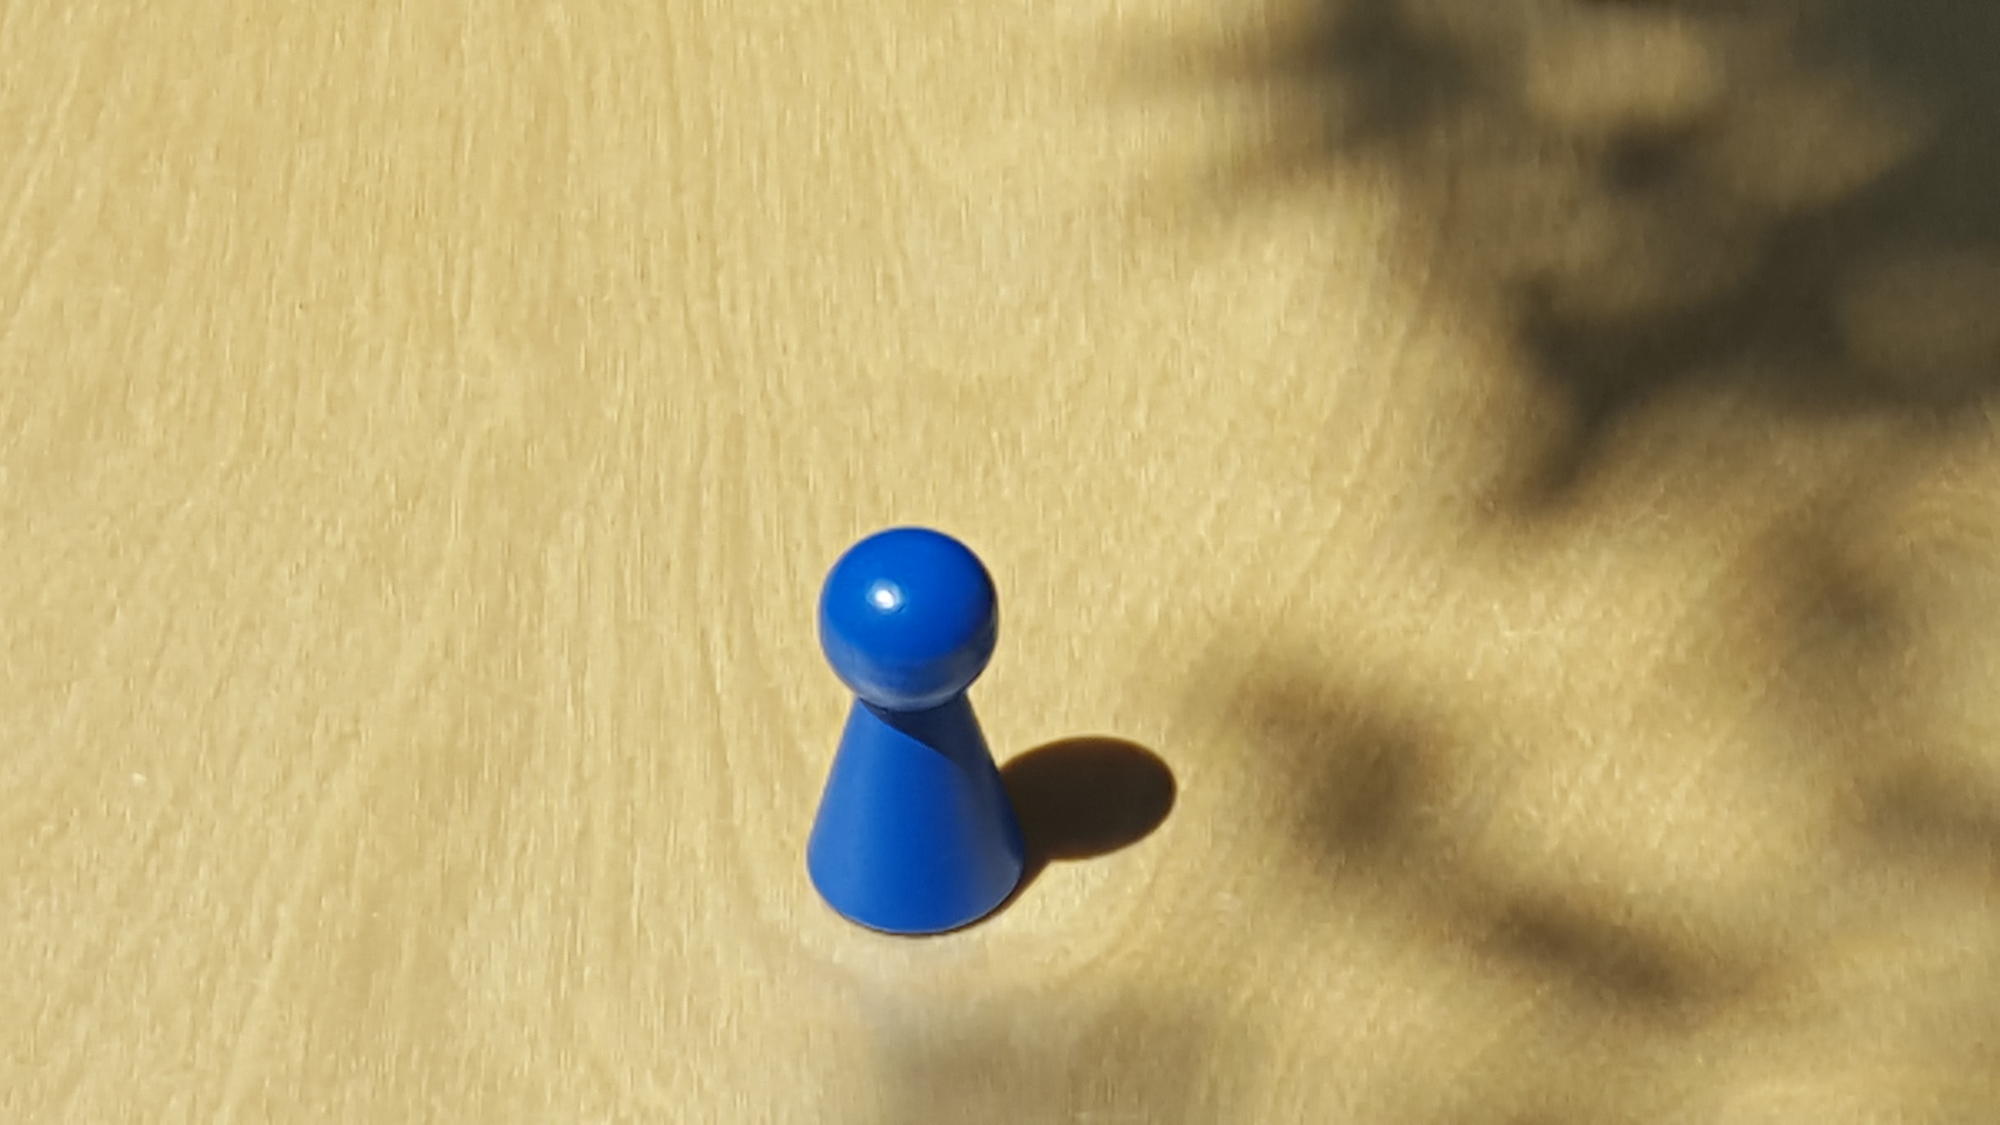 www.systembrett.at · Systembrett-Artikel · Einzel-Figur 4 cm in blau (ohne Augen);